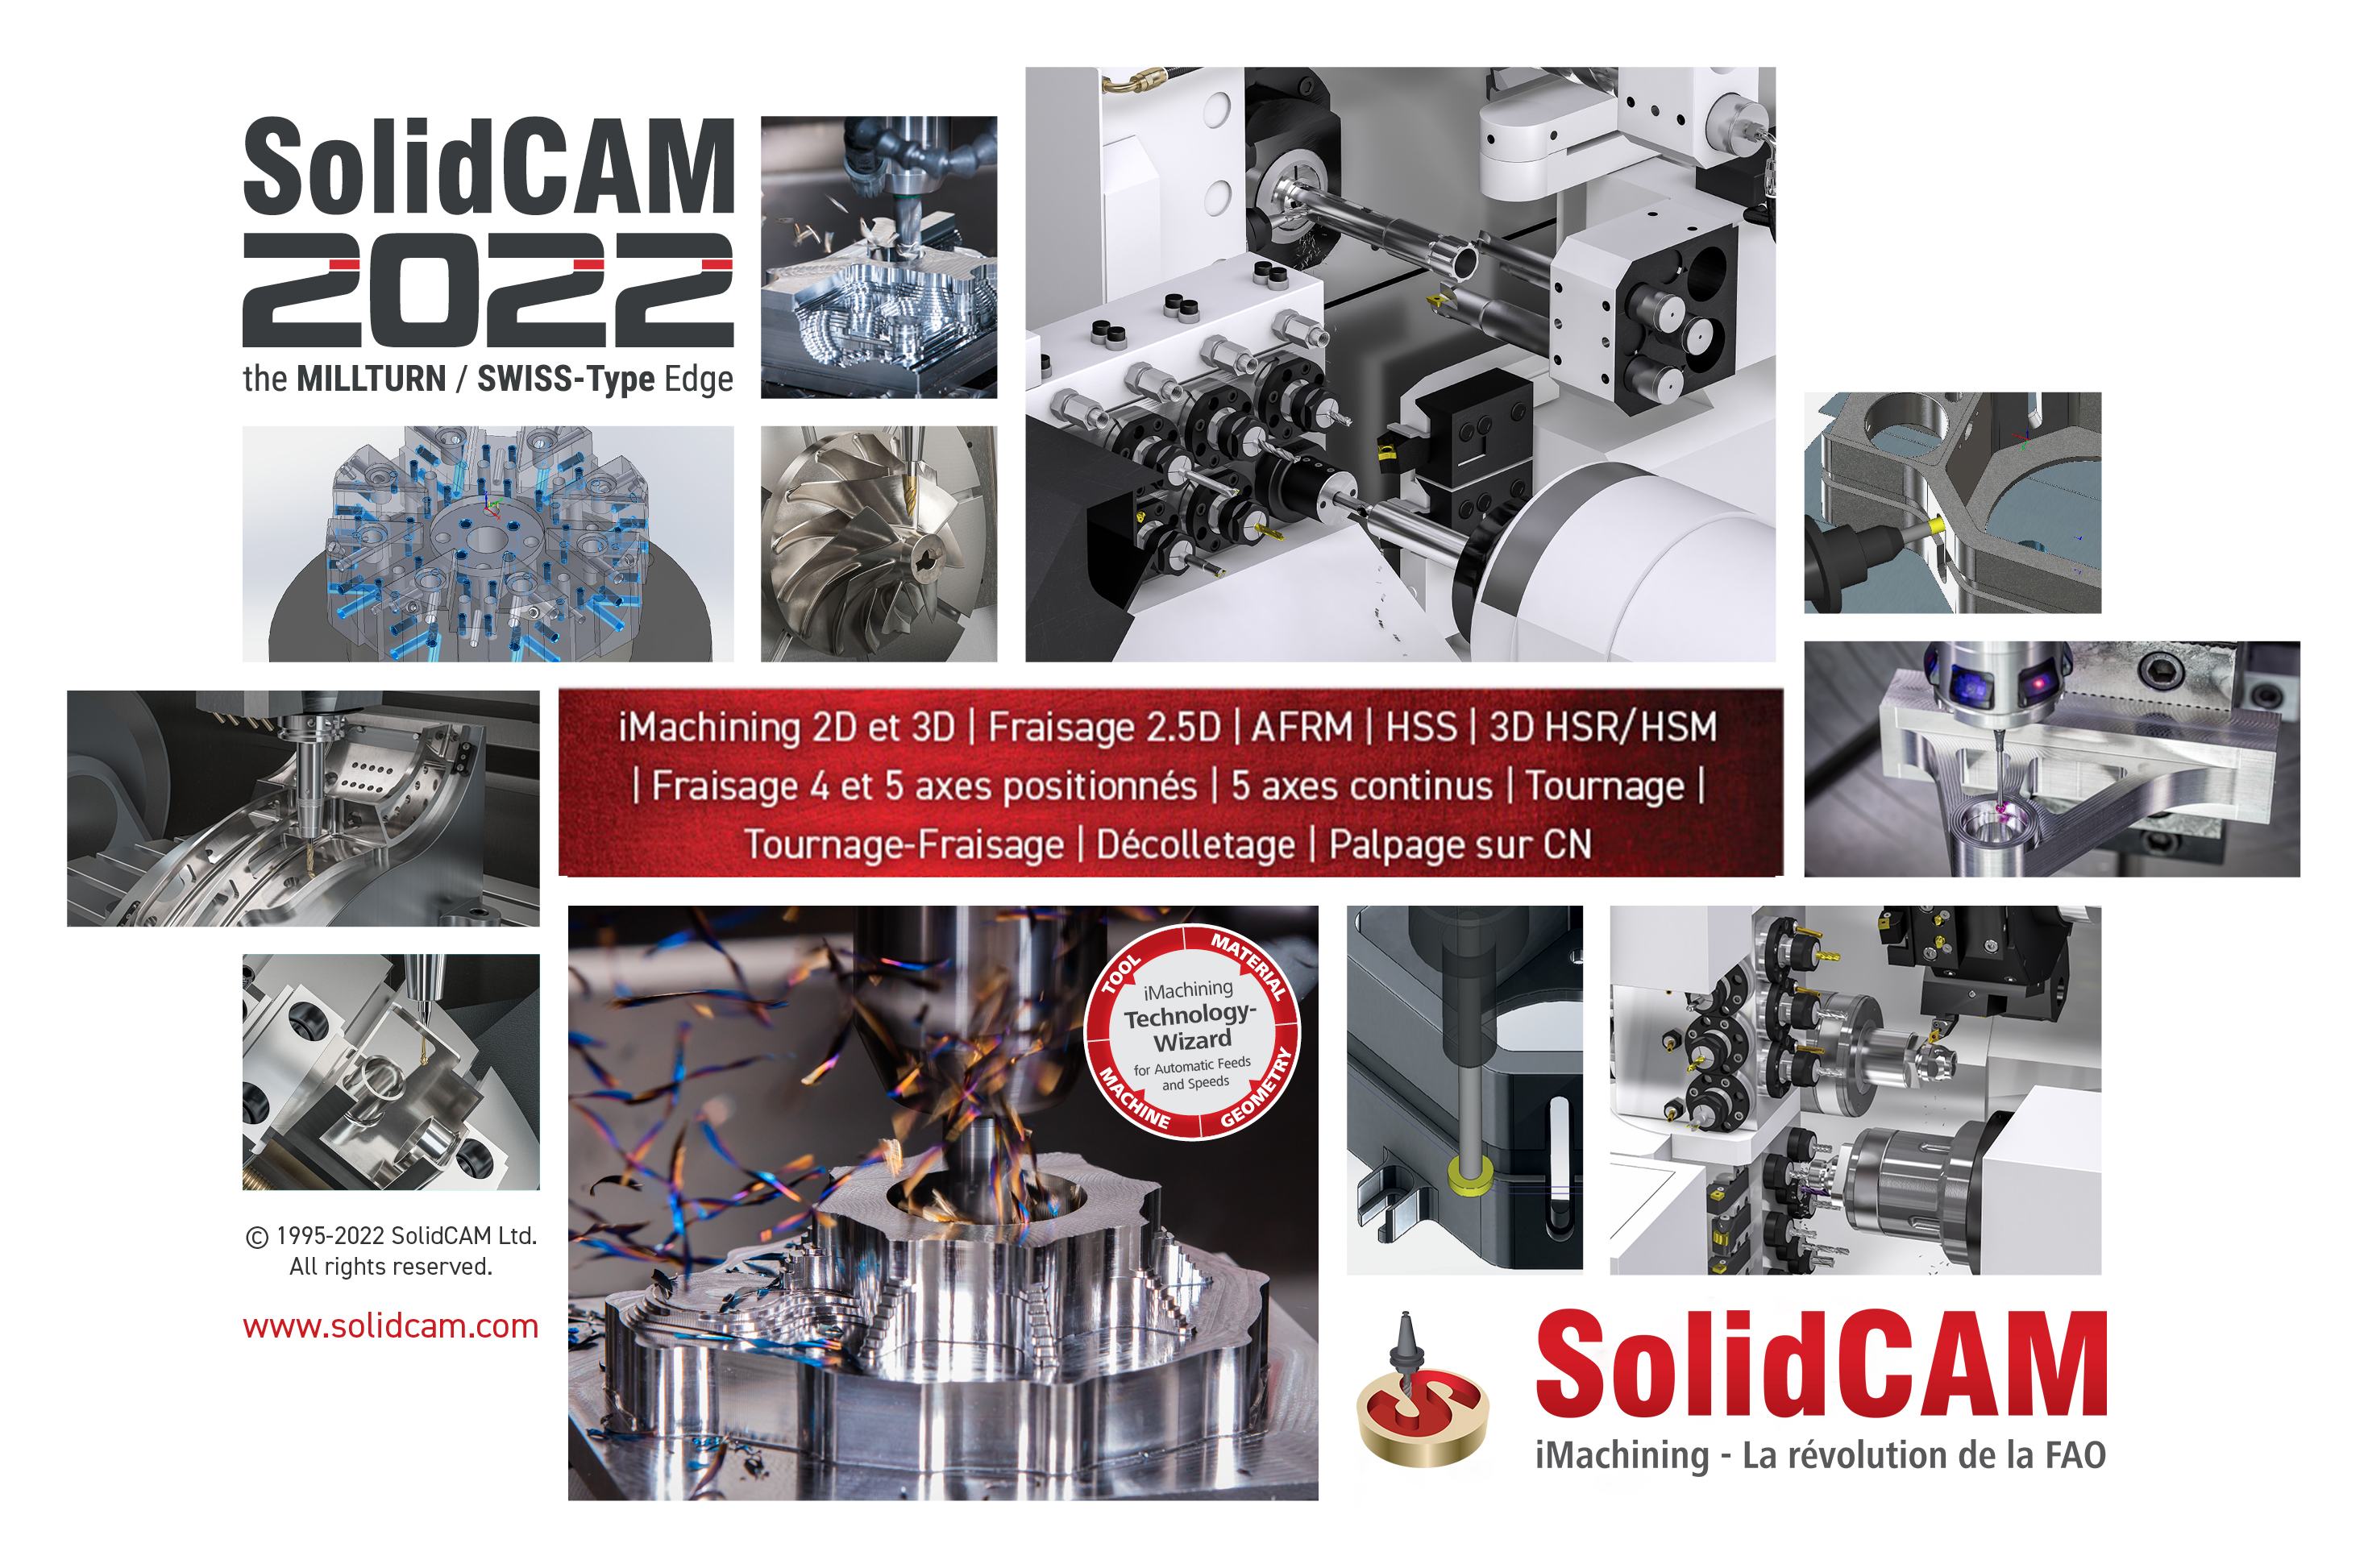 De nouveaux webinaires pour présenter les nouveautés de SolidCAM 2022